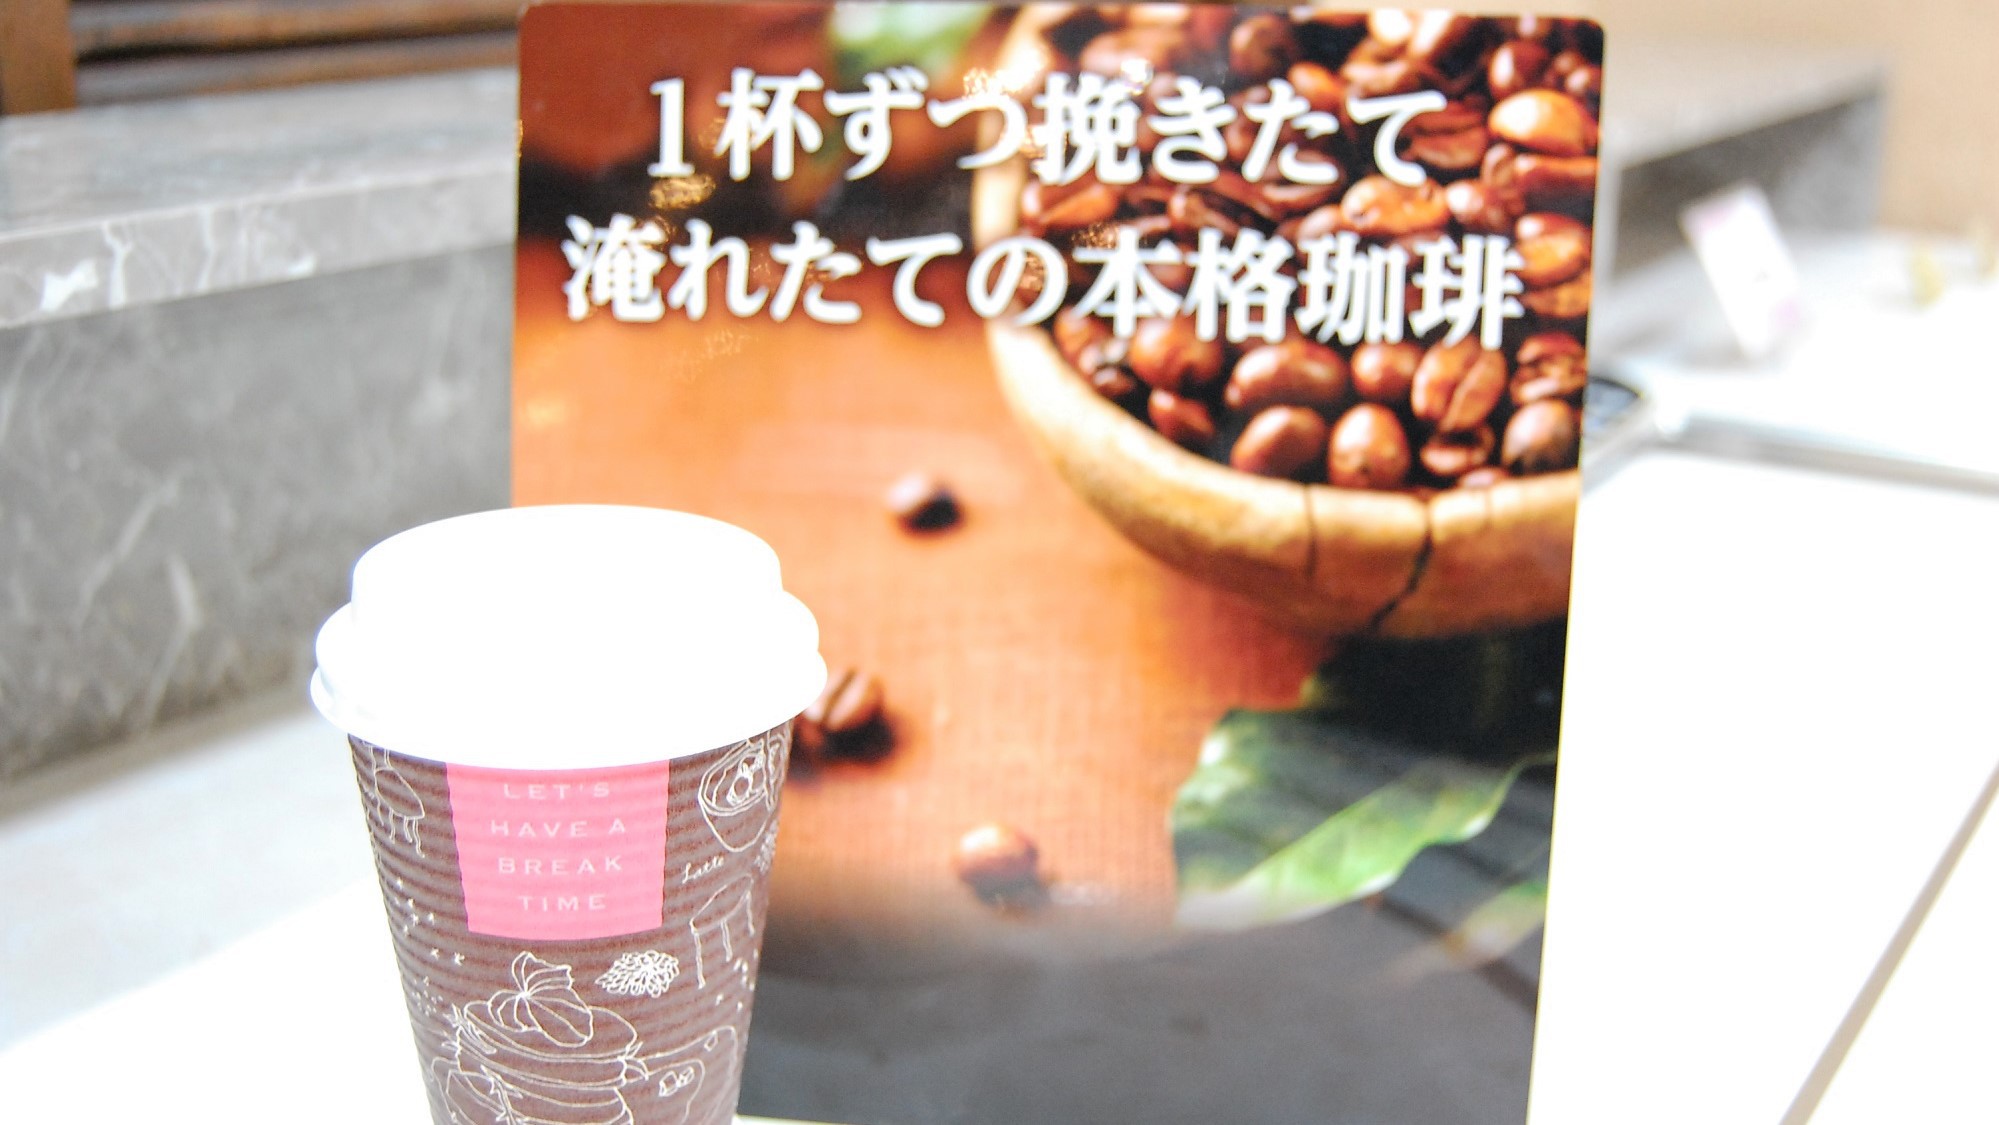 「ご朝食・テイクアウトコーヒー」 ひきたての香りが美味しい本格珈琲♪(イメージ)